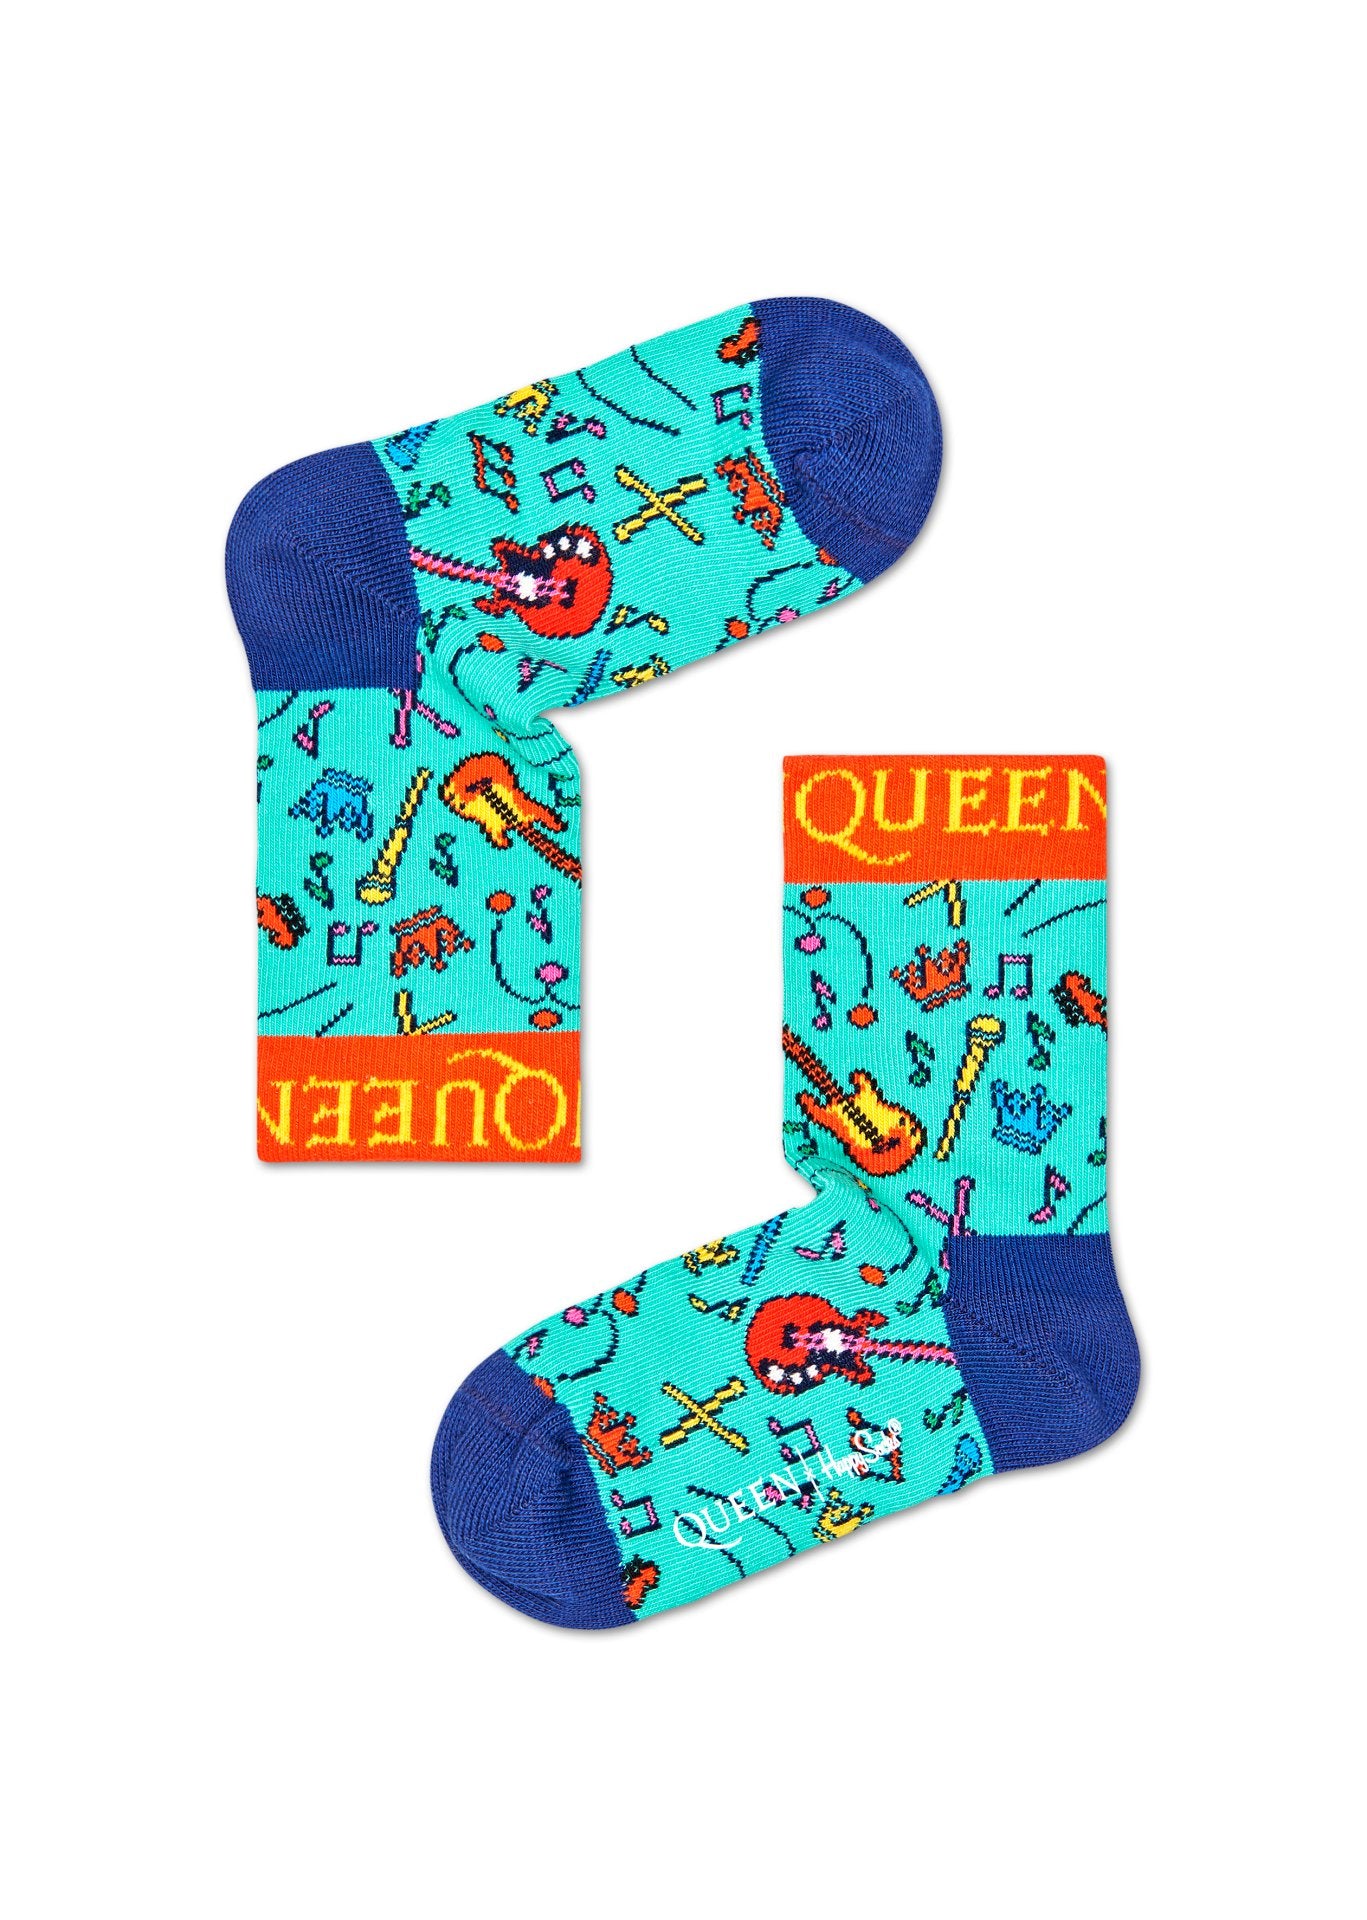 Dětské tyrkysové ponožky z kolekce Happy Socks x Queen, vzor The Works